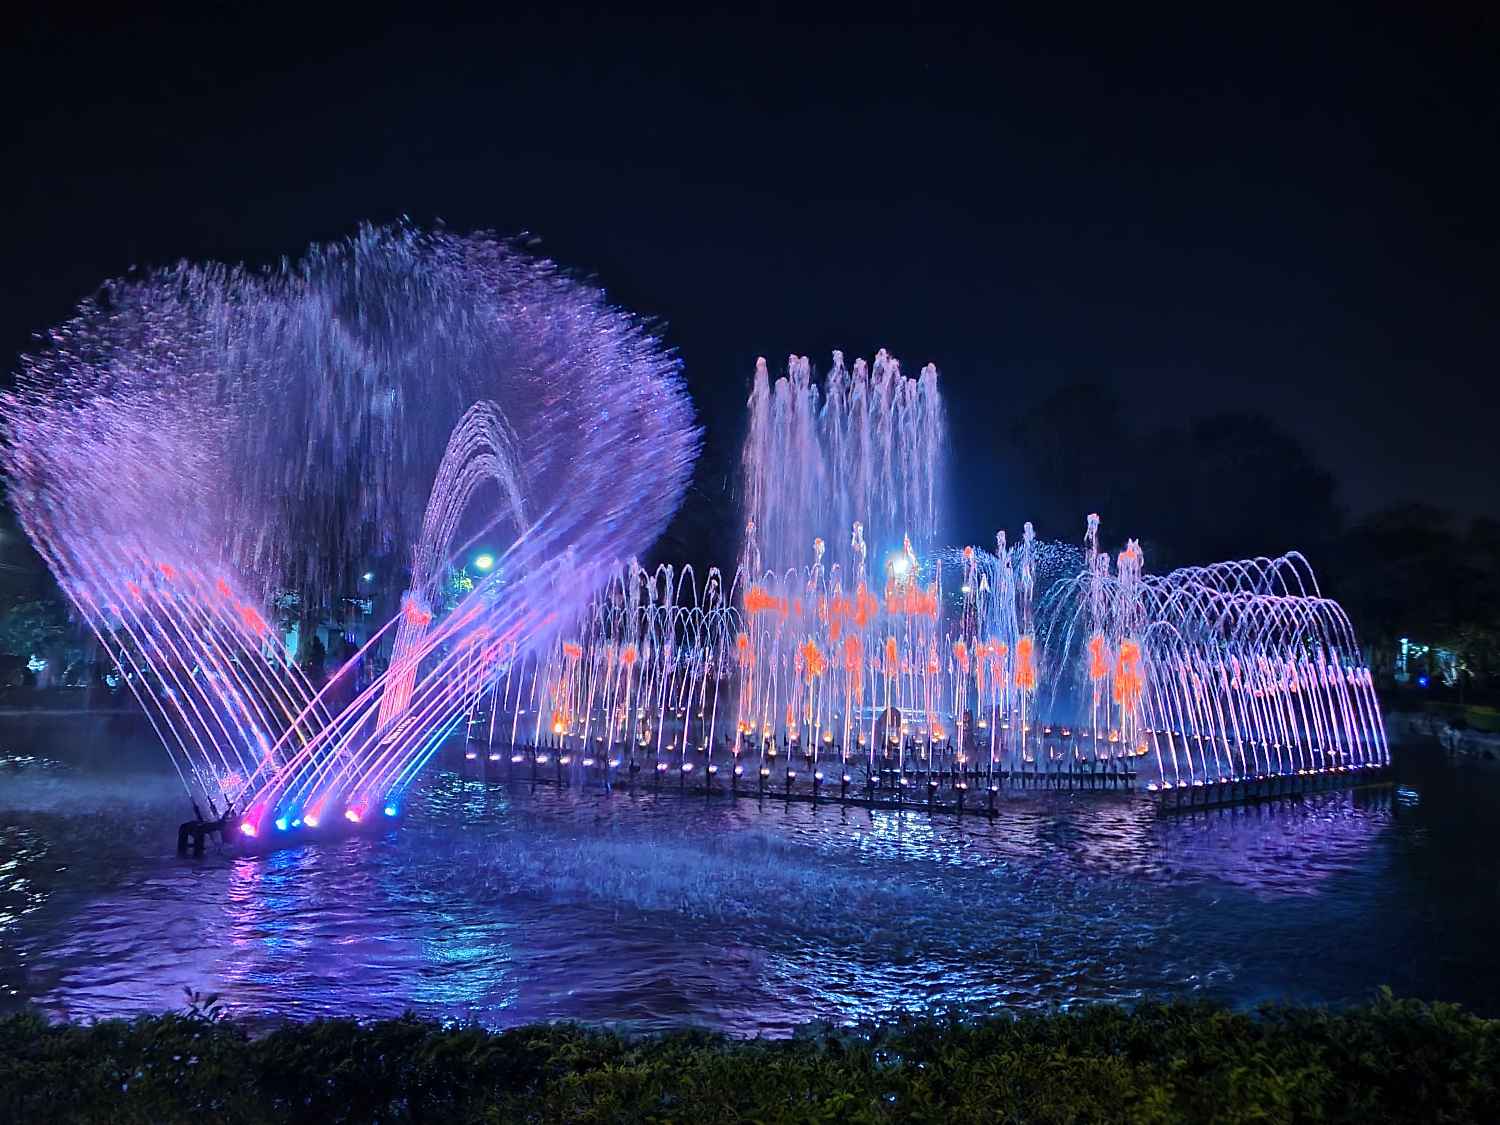 Pertunjukan air mancur yang berwarna-warni ketika malam hari di Taman Lumintang Denpasar